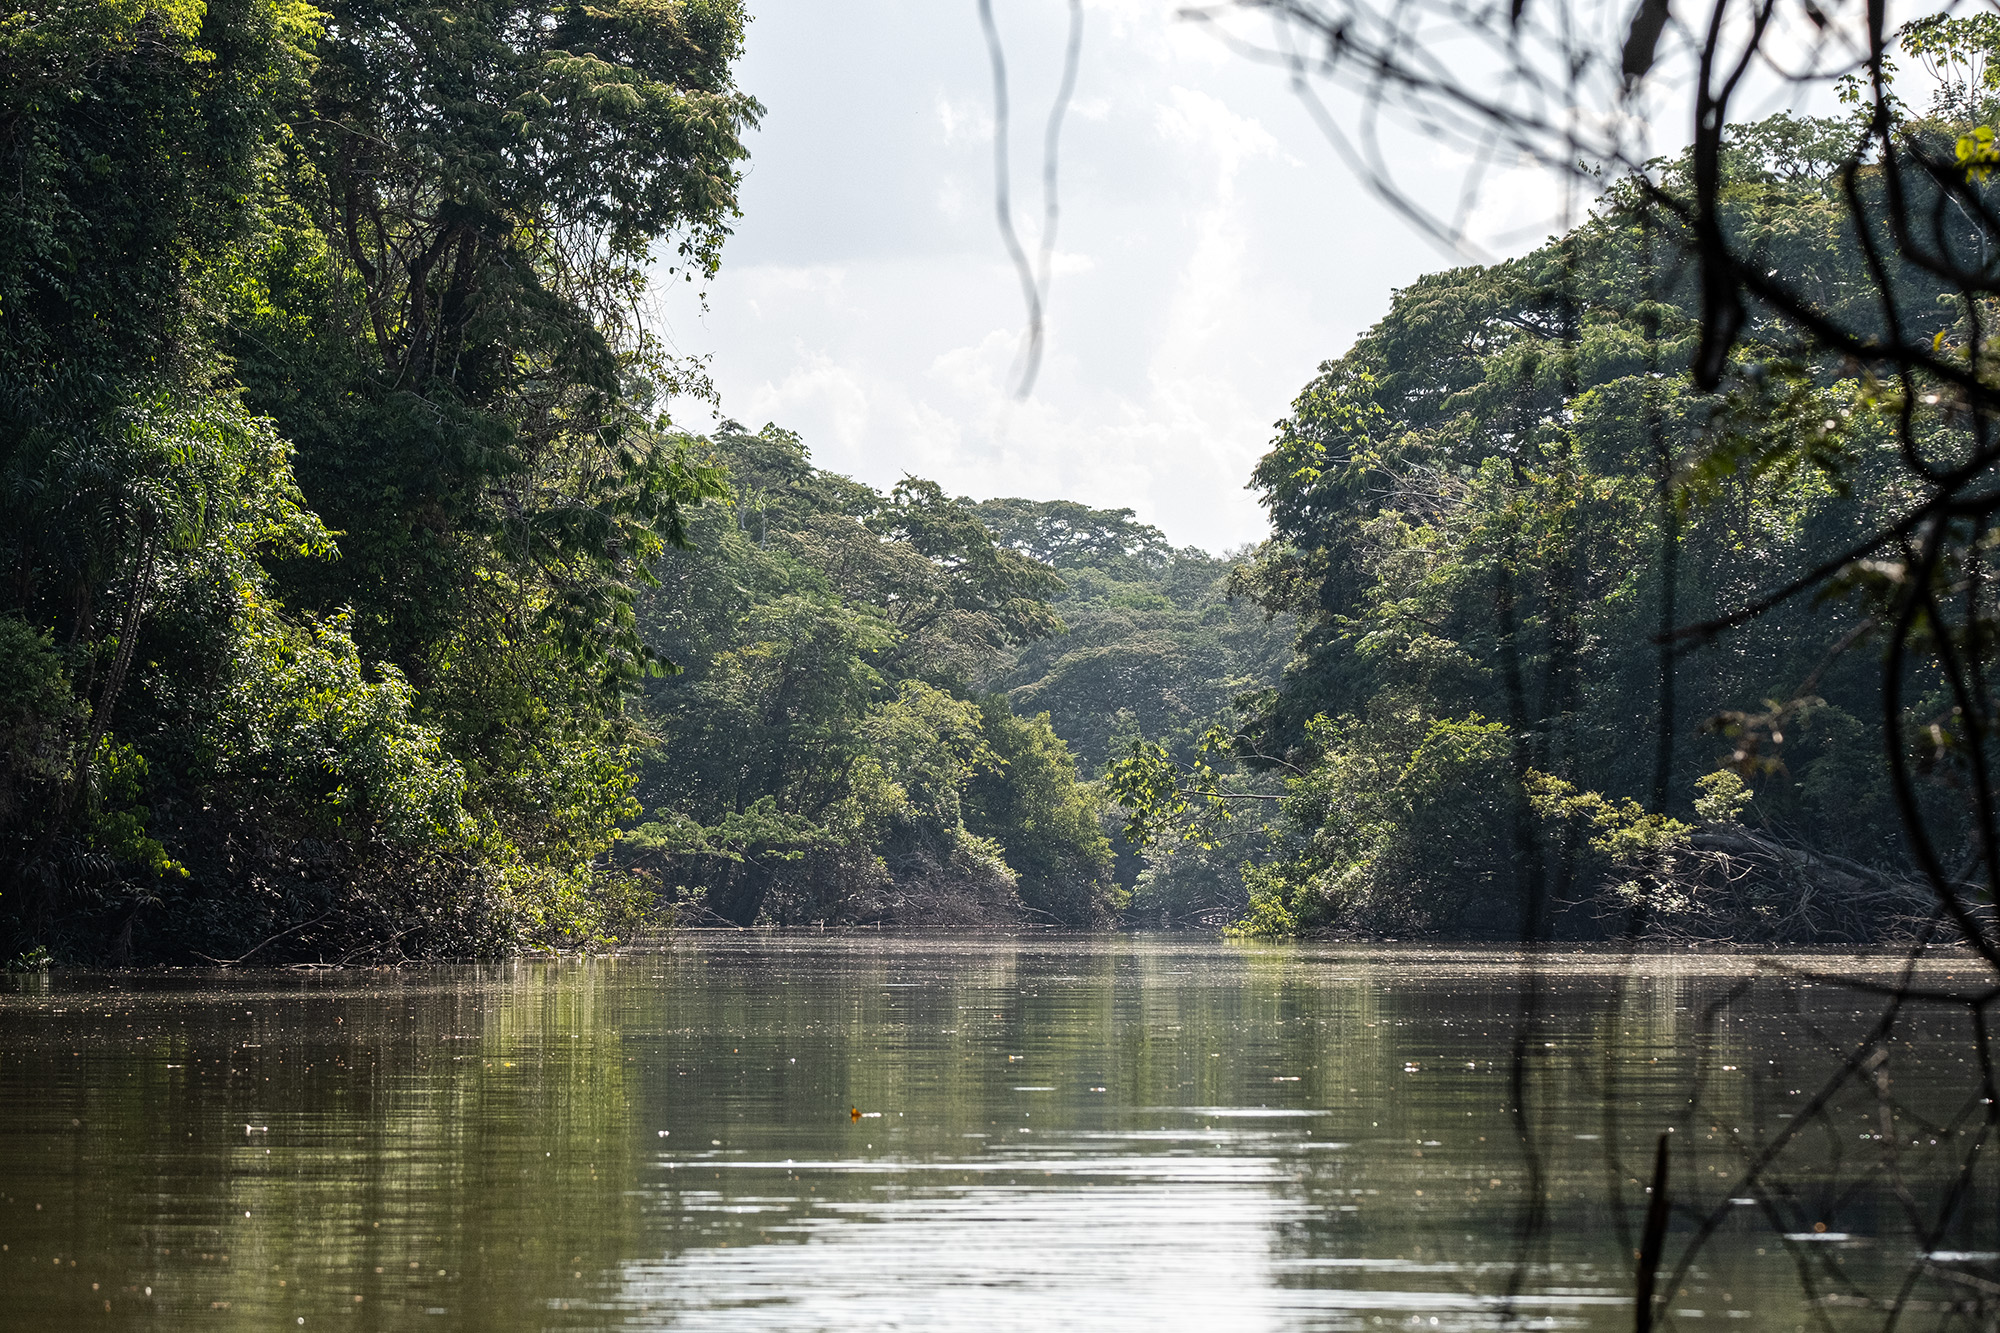 Los ríos amazónicos son, en muchos casos, los límites de los resguardos indígenas, pero en la práctica son un espacio compartido de donde sacan su sustento y garantizan su movimiento. Foto: Víctor Galeano.